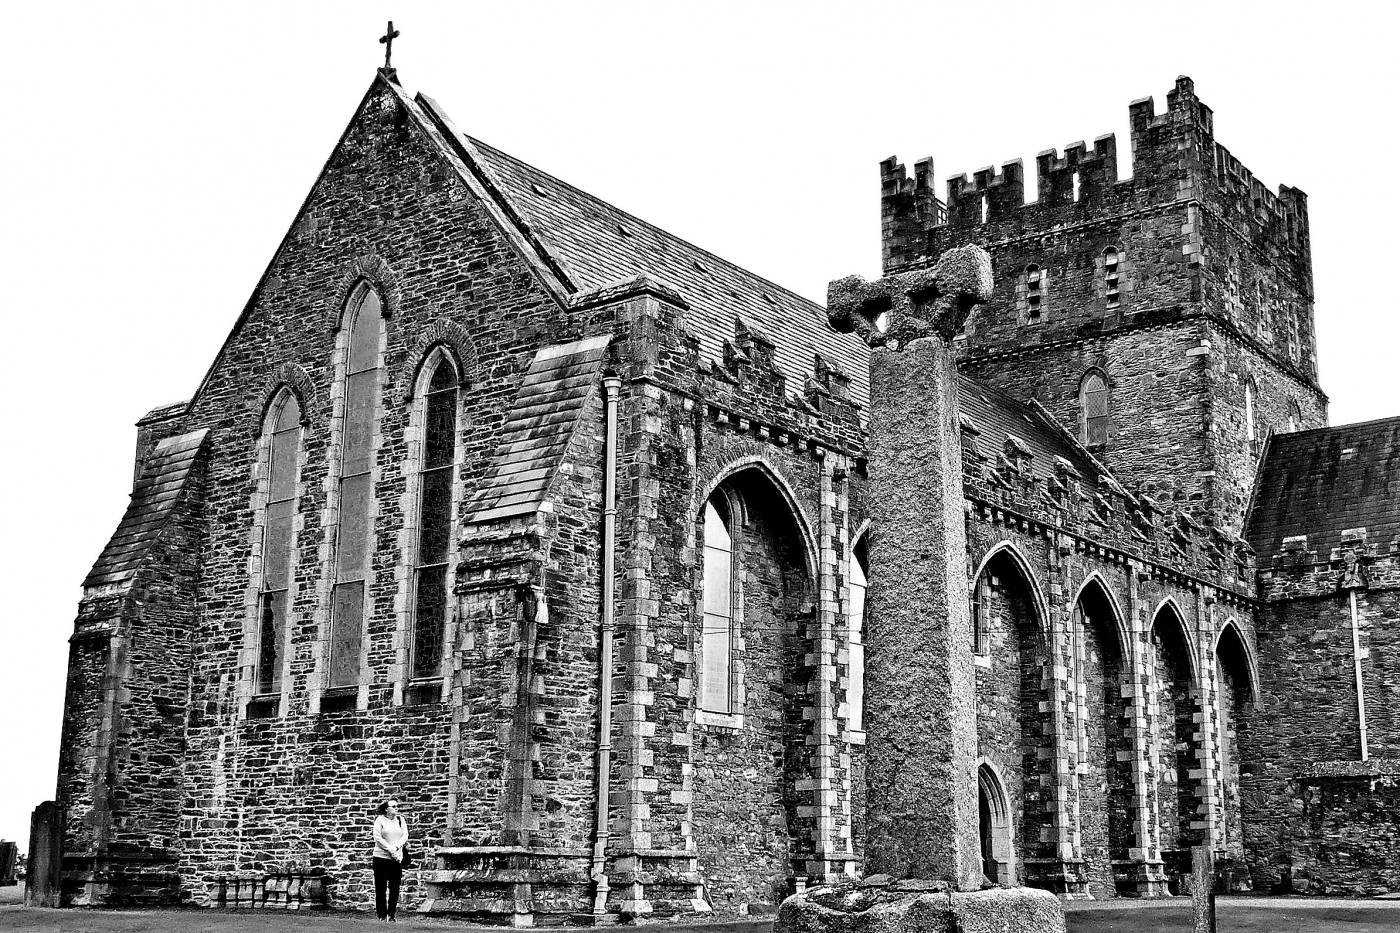 St. Brigid's, Kildare by John Clancy